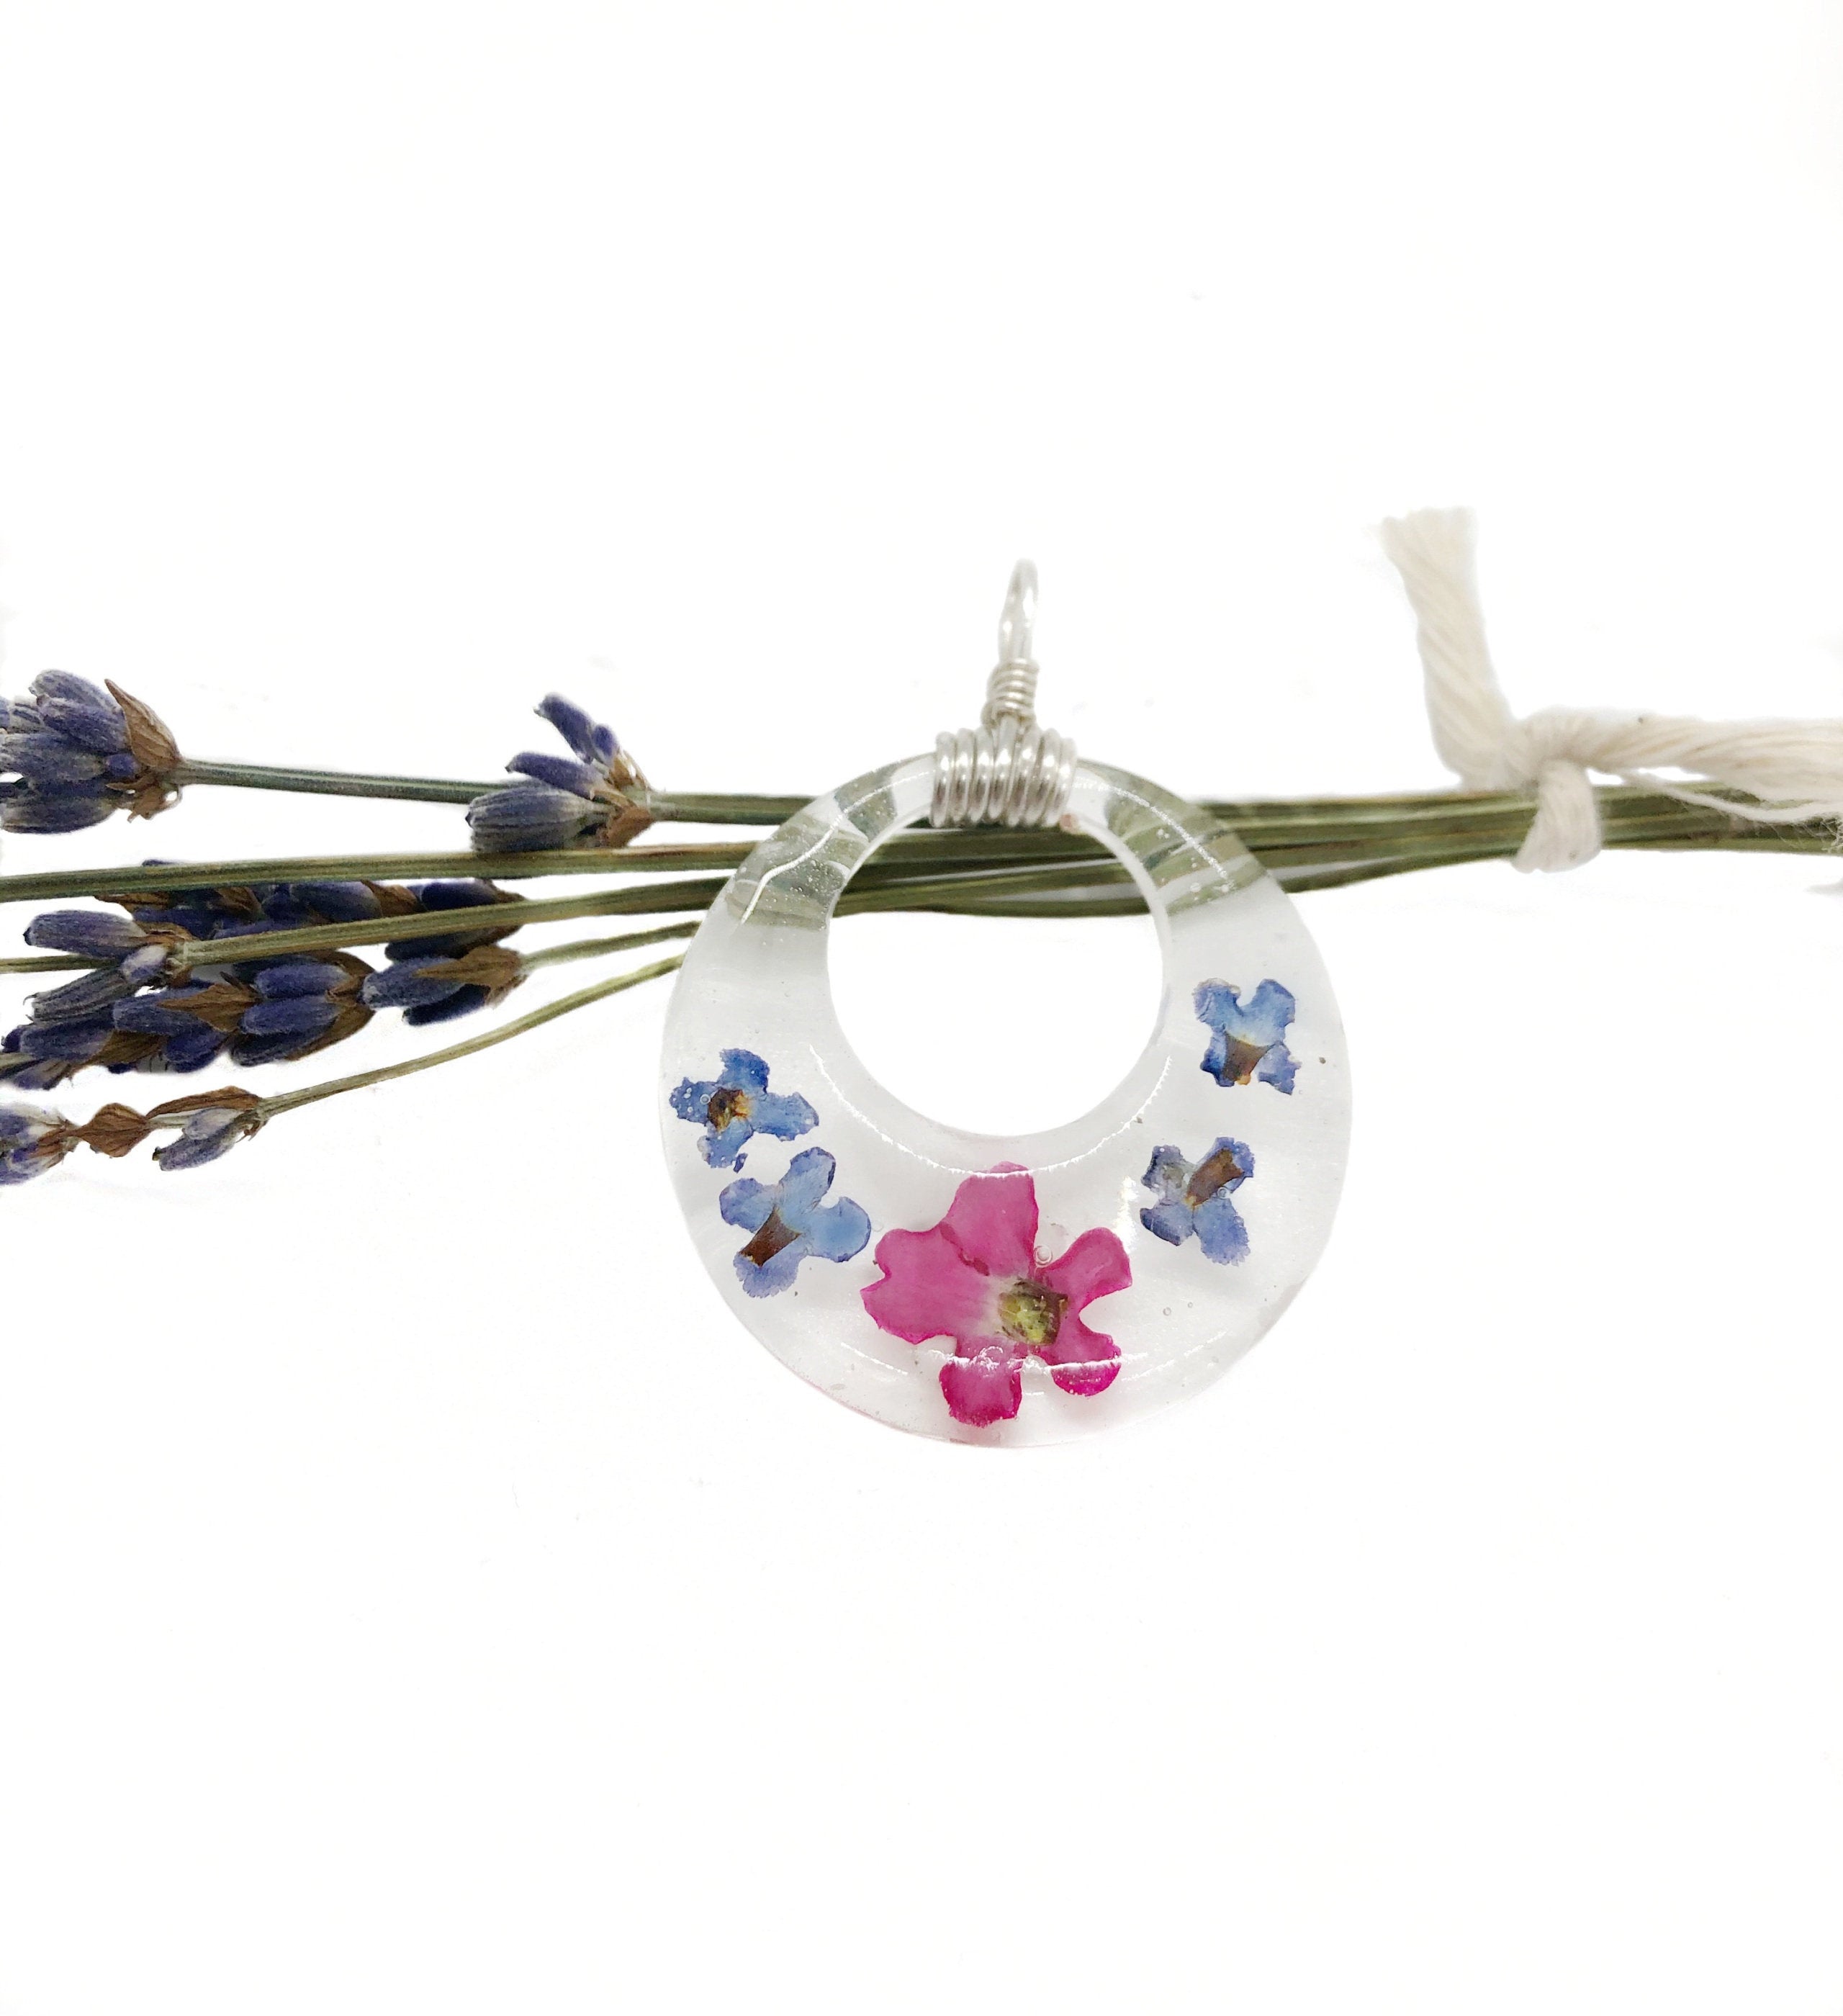 Reversible Smile Blotter and Flower Pendant | Groovy Opal, LLC.